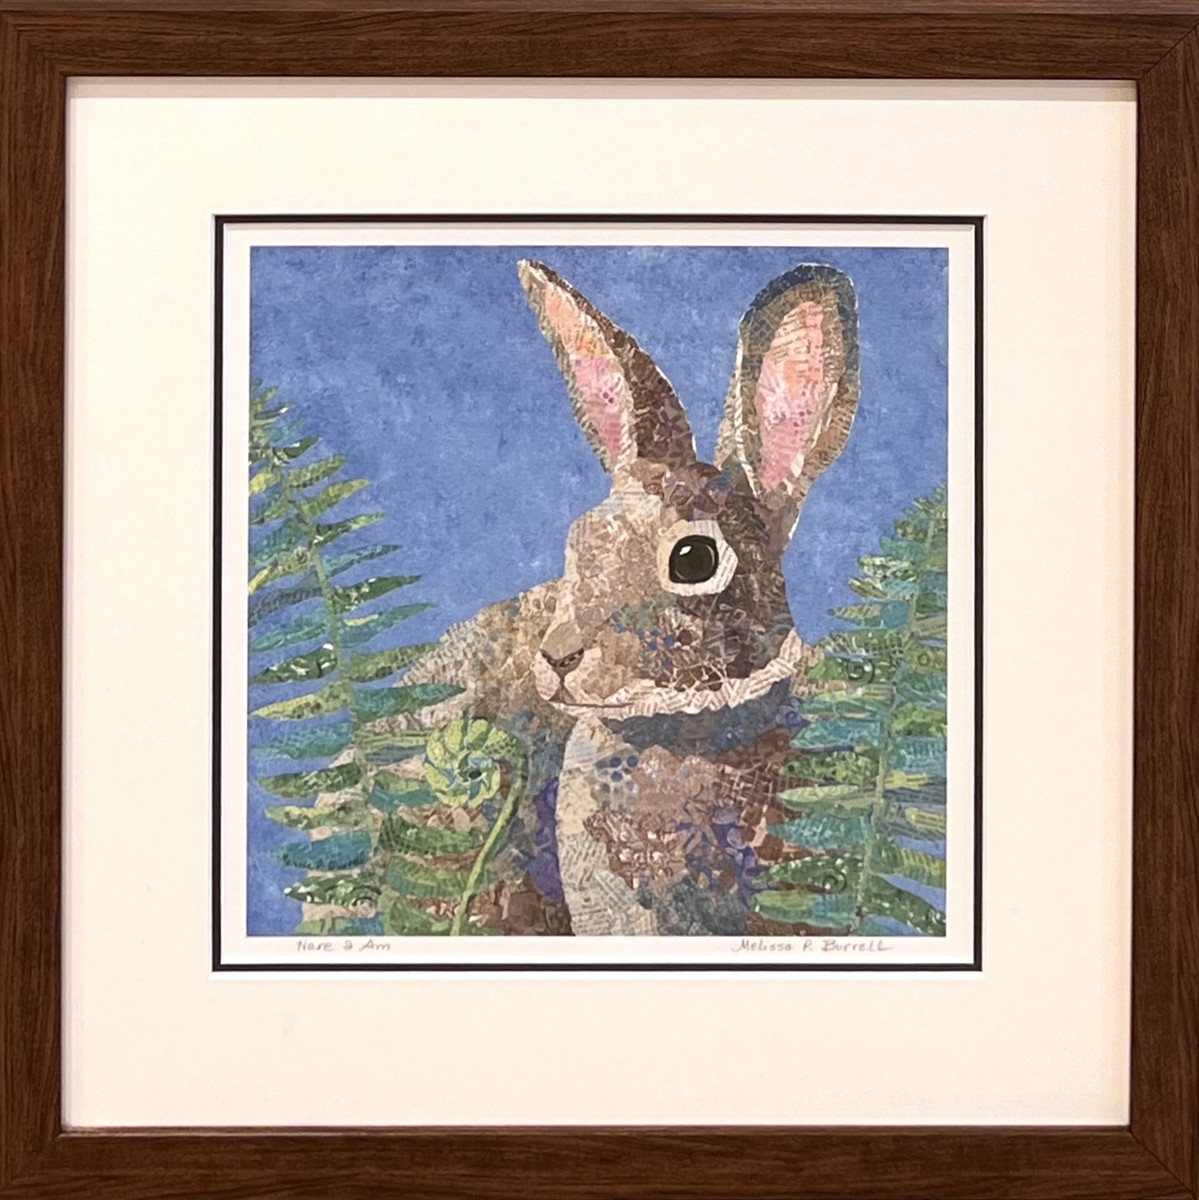 Framed Giclee - Hare I am